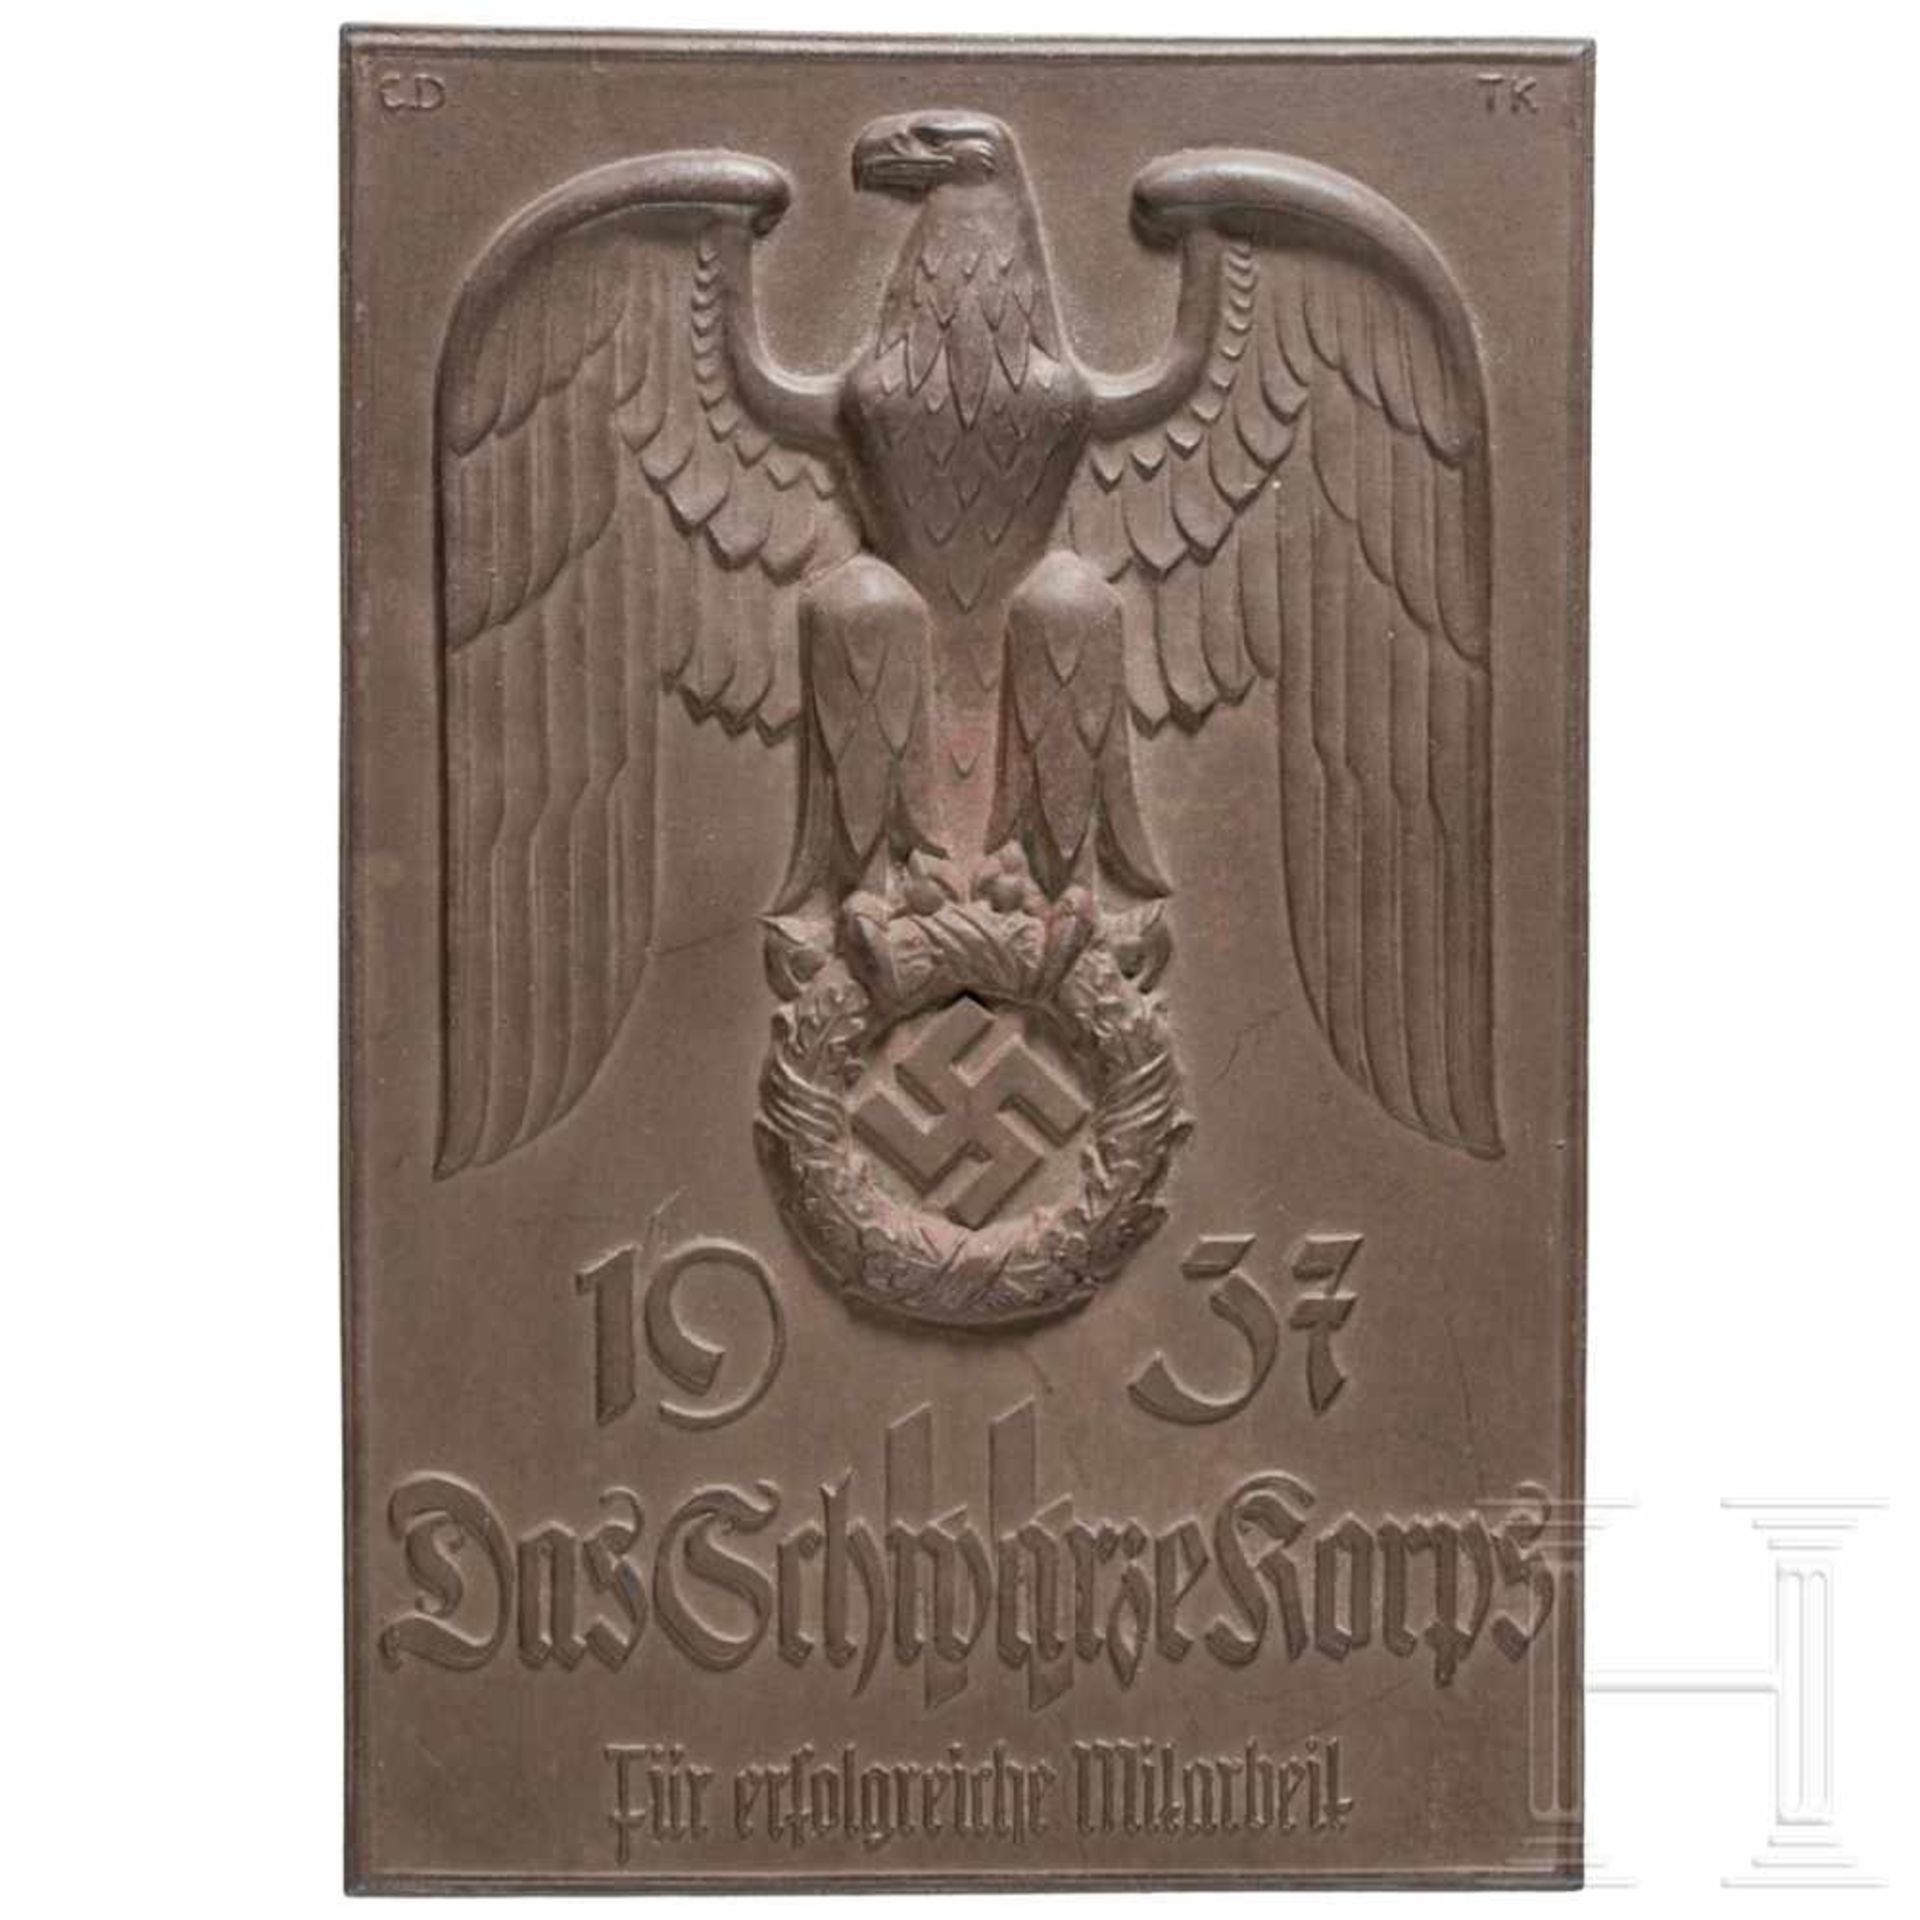 An honour plaque "Für erfolgreiche Mitarbeit 1937 - Das Schwarze Korps"Special issue in brown